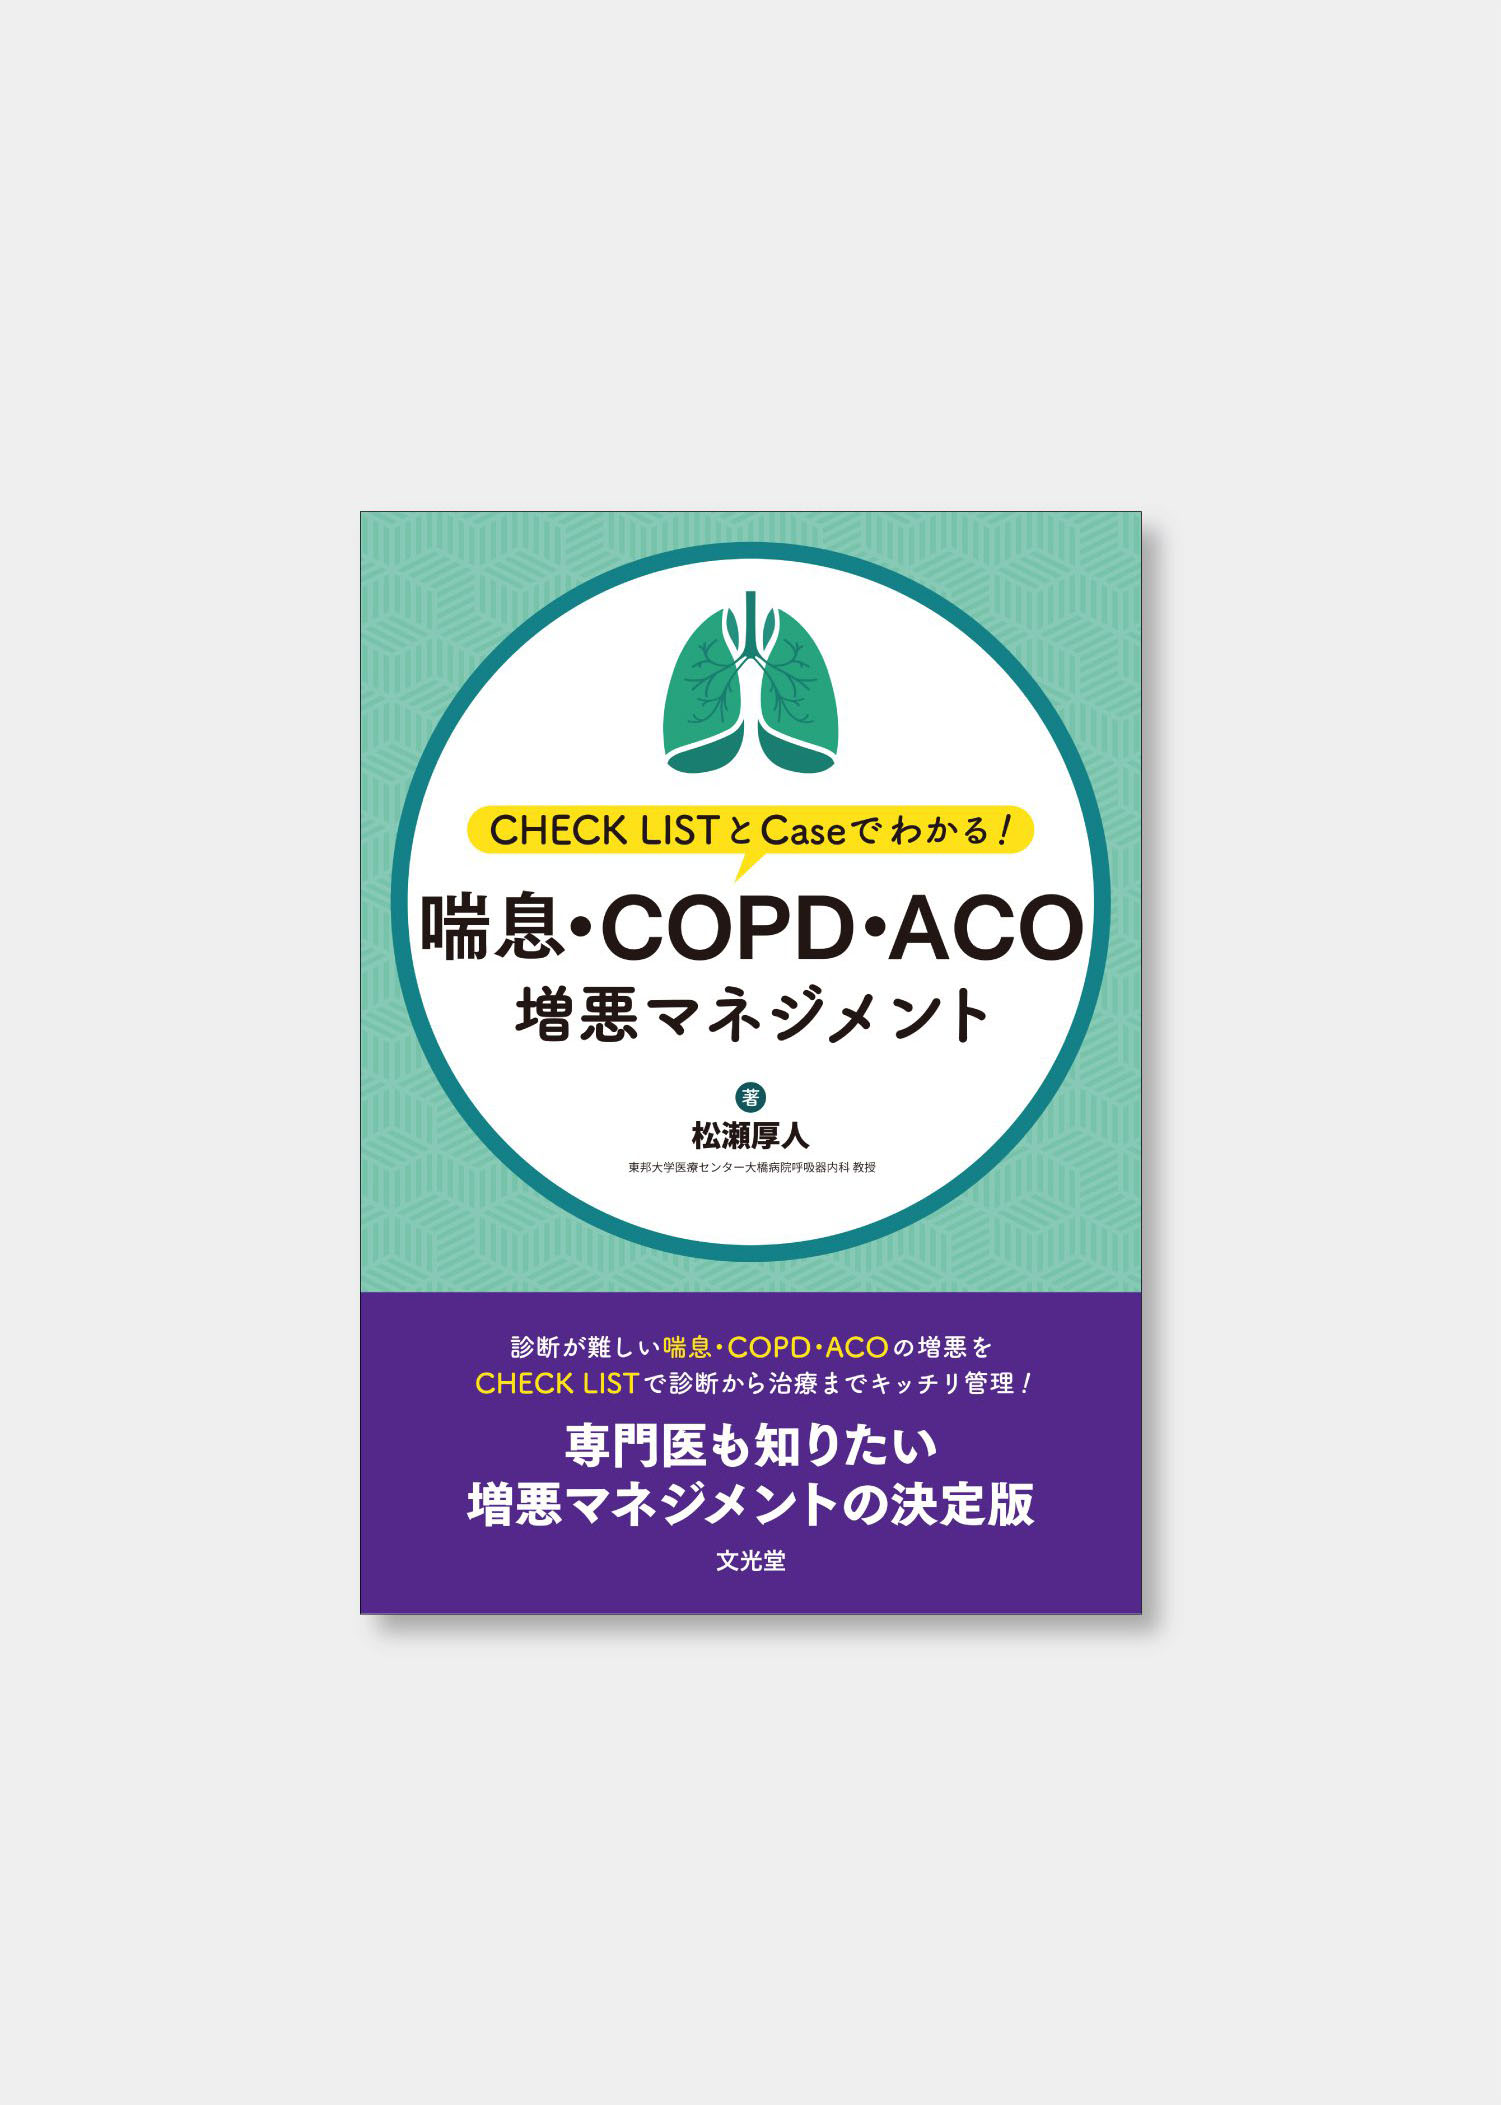 喘息・COPD・ACO増悪マネジメント - 装丁 制作実績 - 4U design